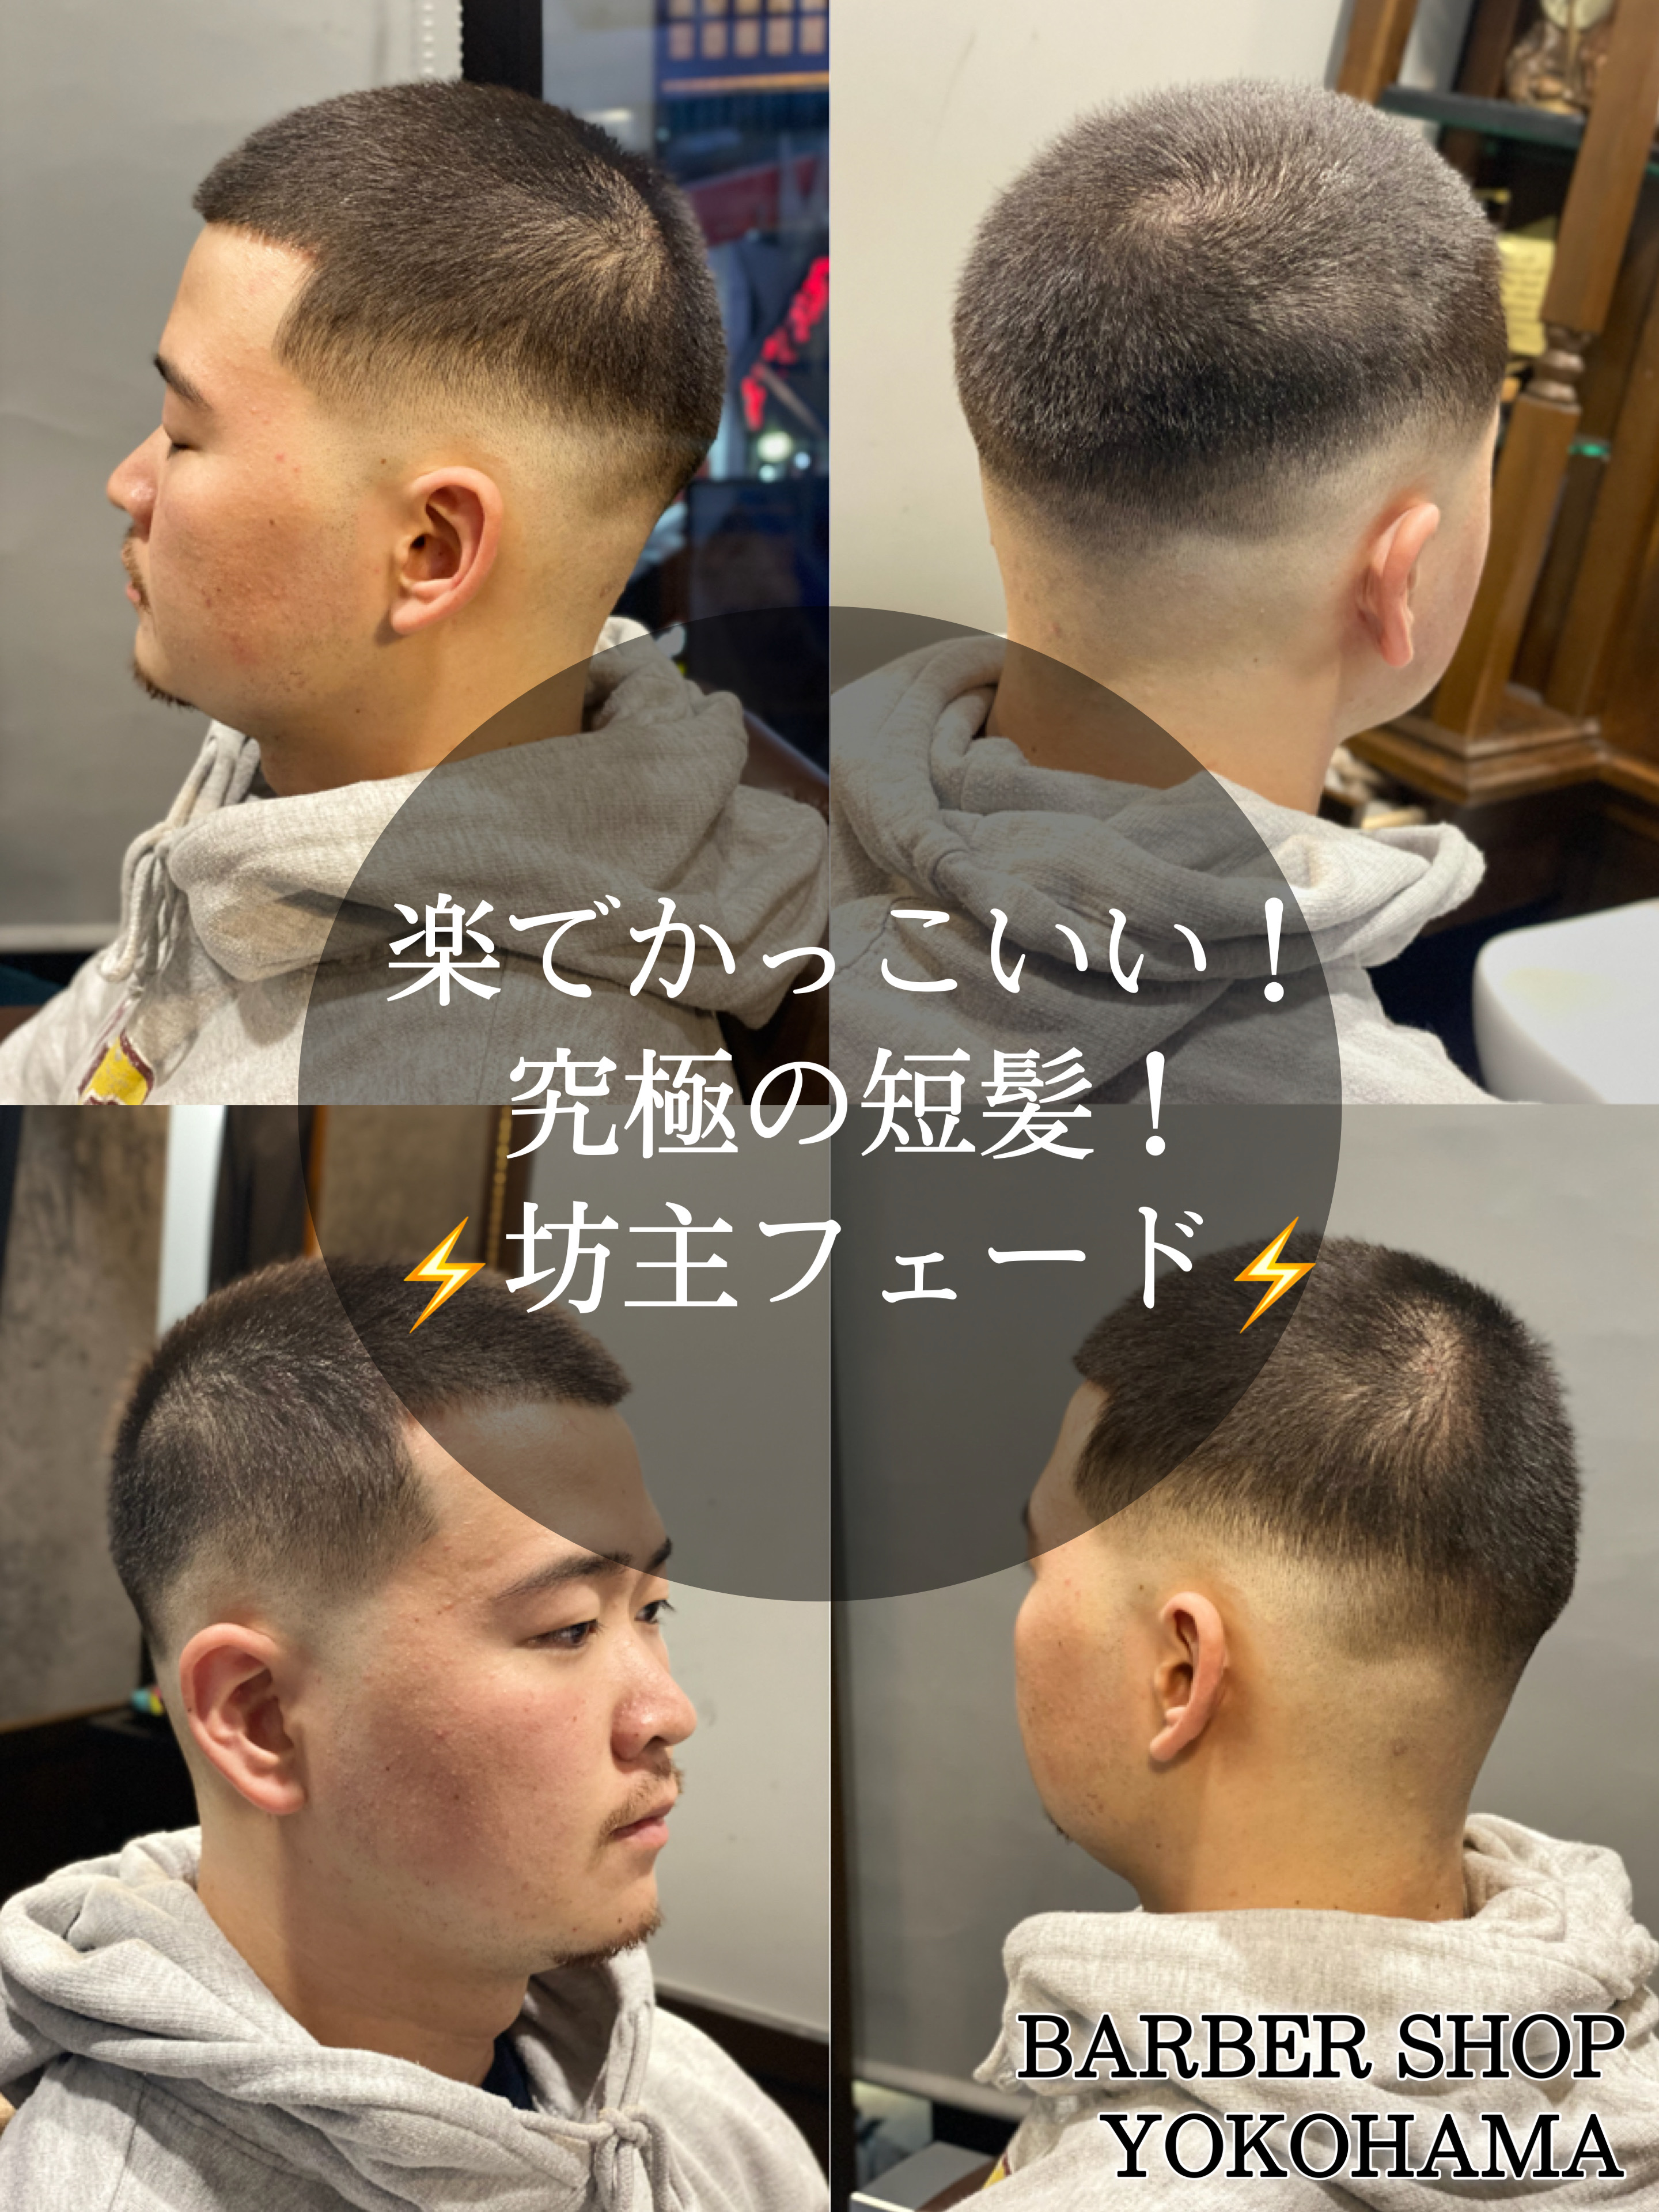 坊主でもかっこいい ブログ Barbershop 横浜店 高級理容室 床屋 ヒロ銀座ヘアーサロン